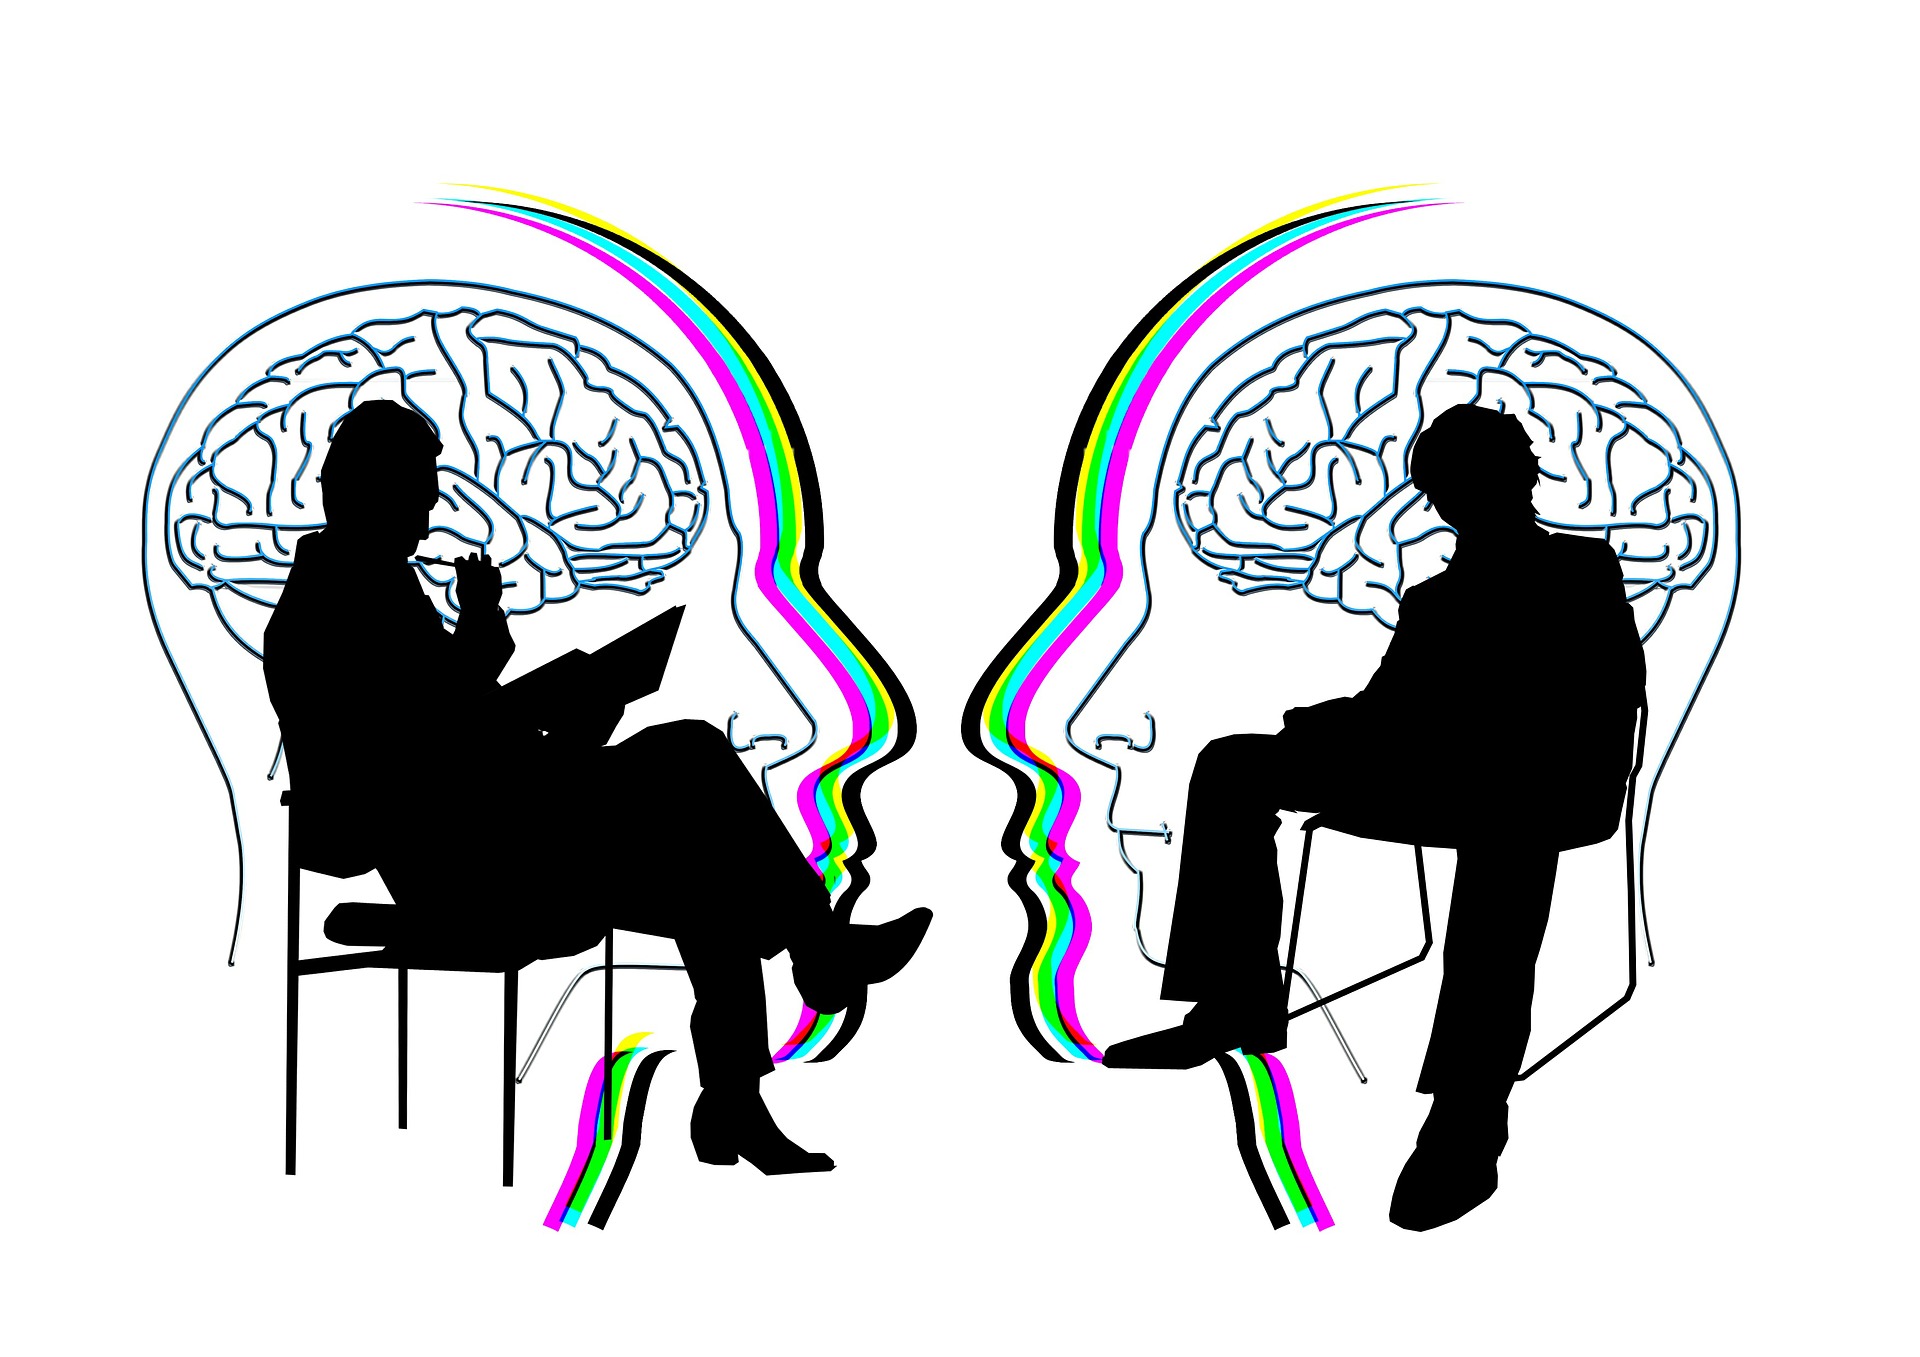 psychologue, psychiatre, psychanalyste : quelles différences ?